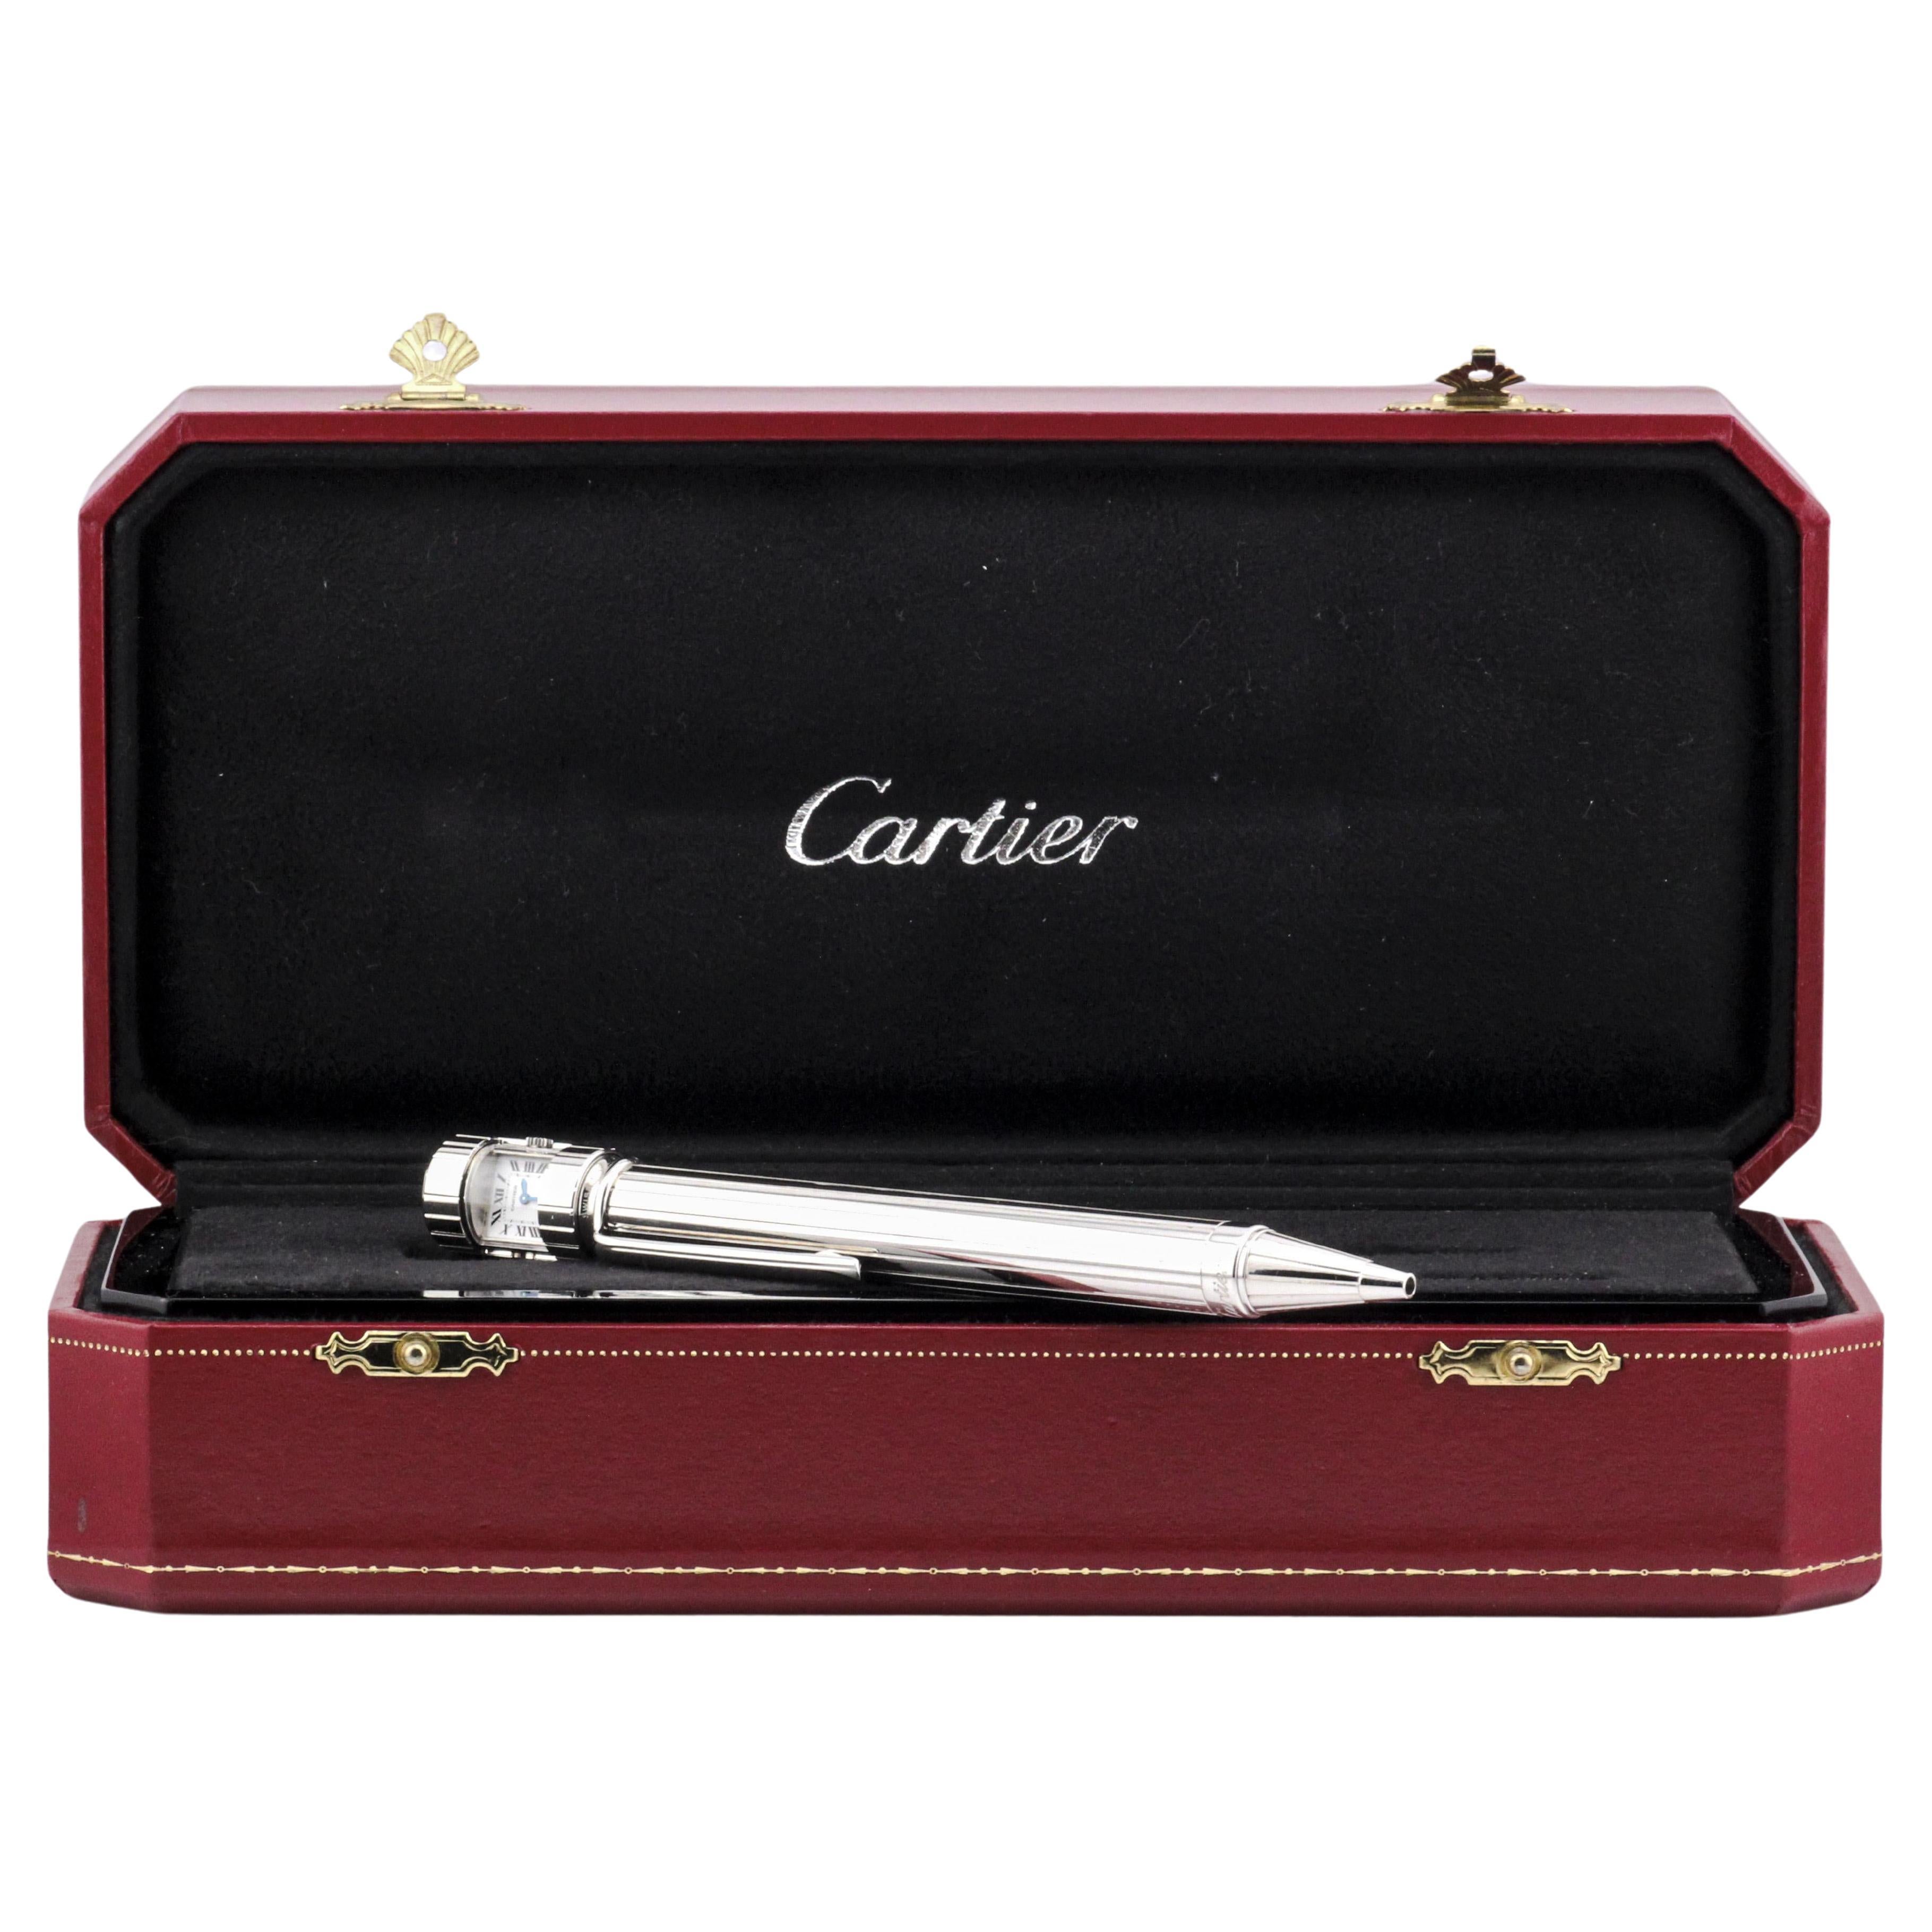 Cartier Limited Edition Watch Ballpoint Pen